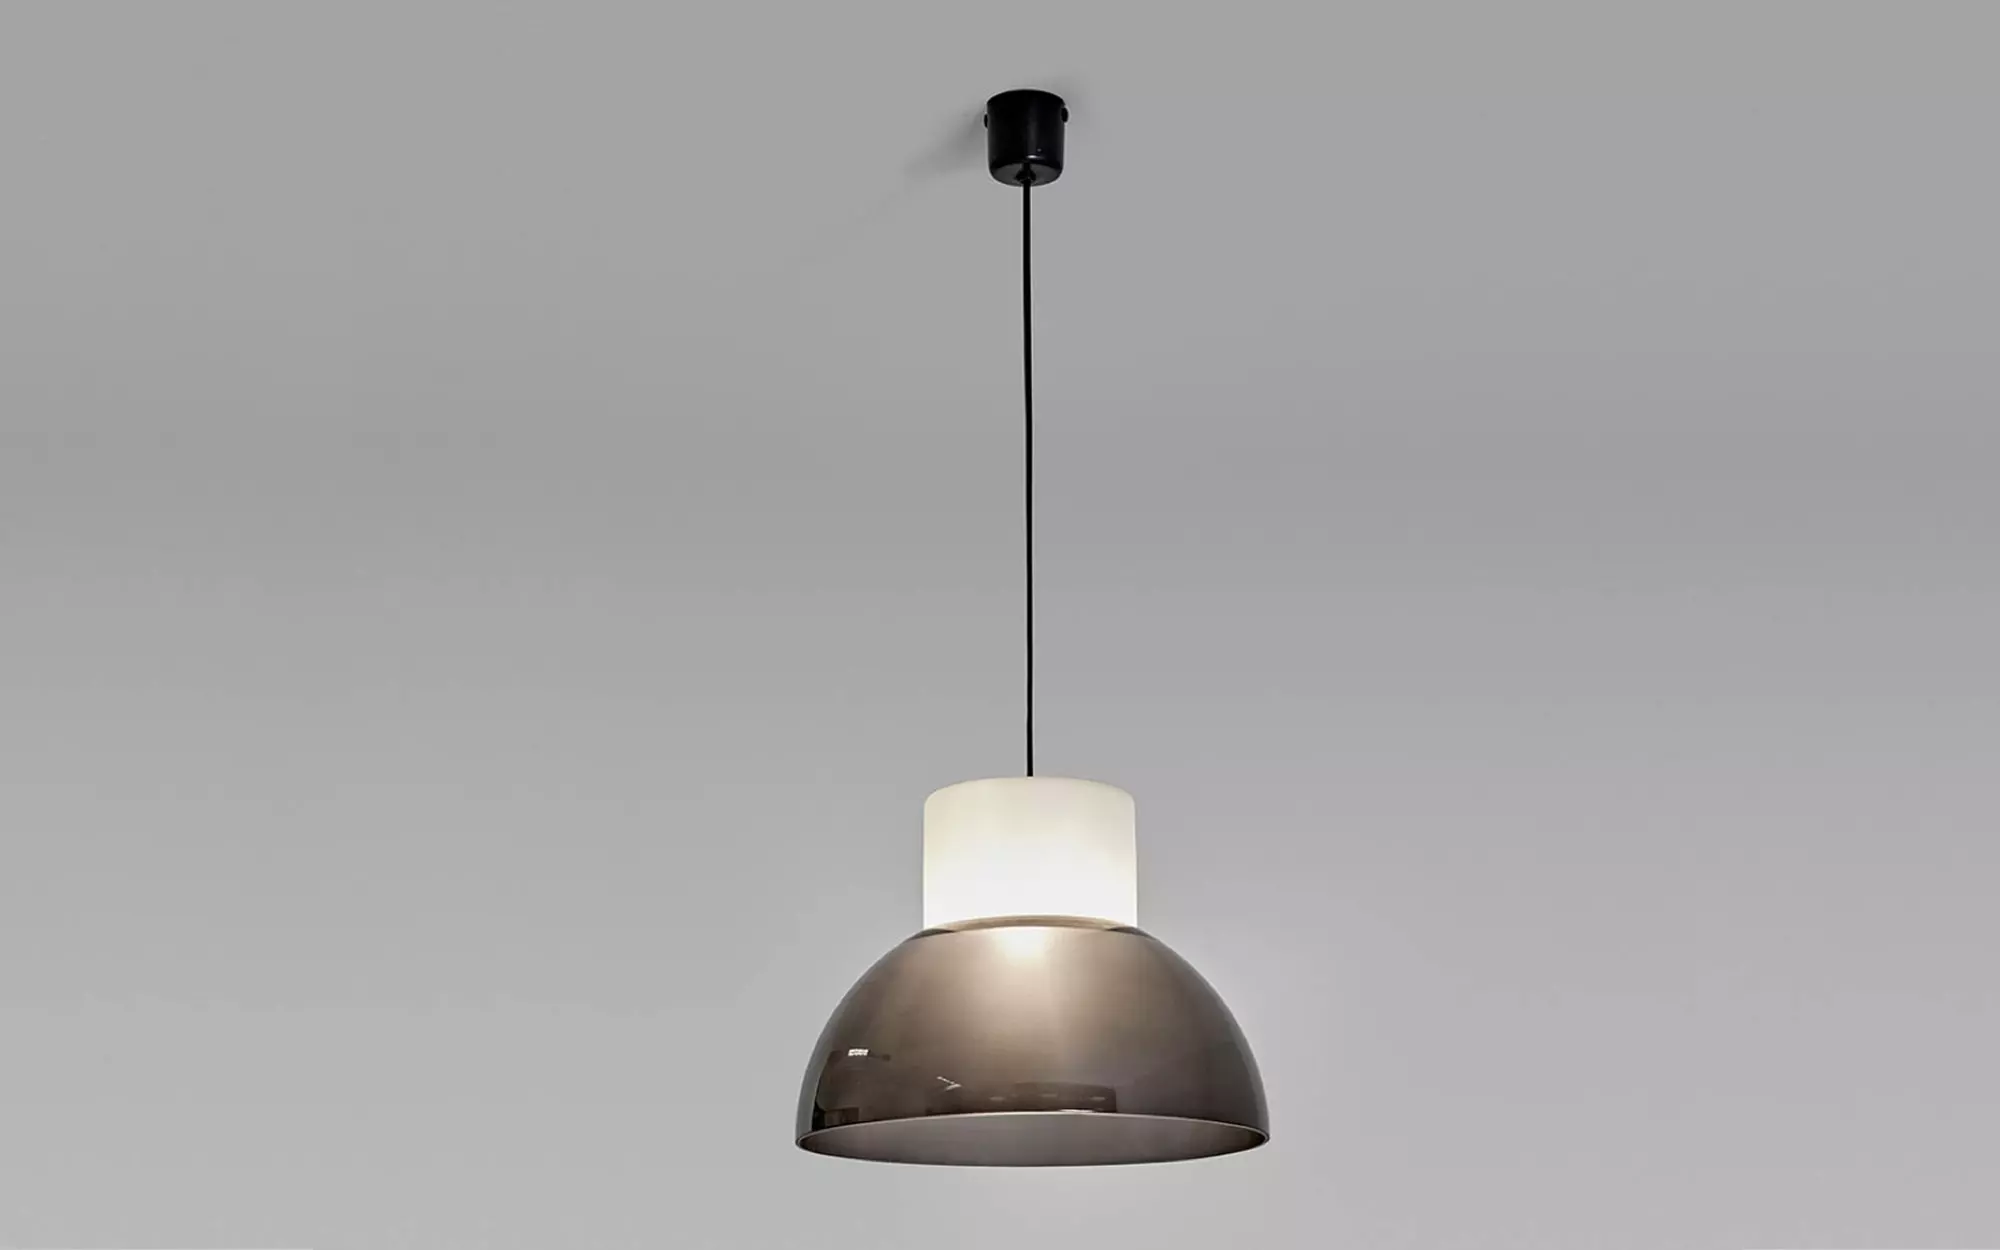 2103 (grey) - Gino Sarfatti - Pendant light - Galerie kreo